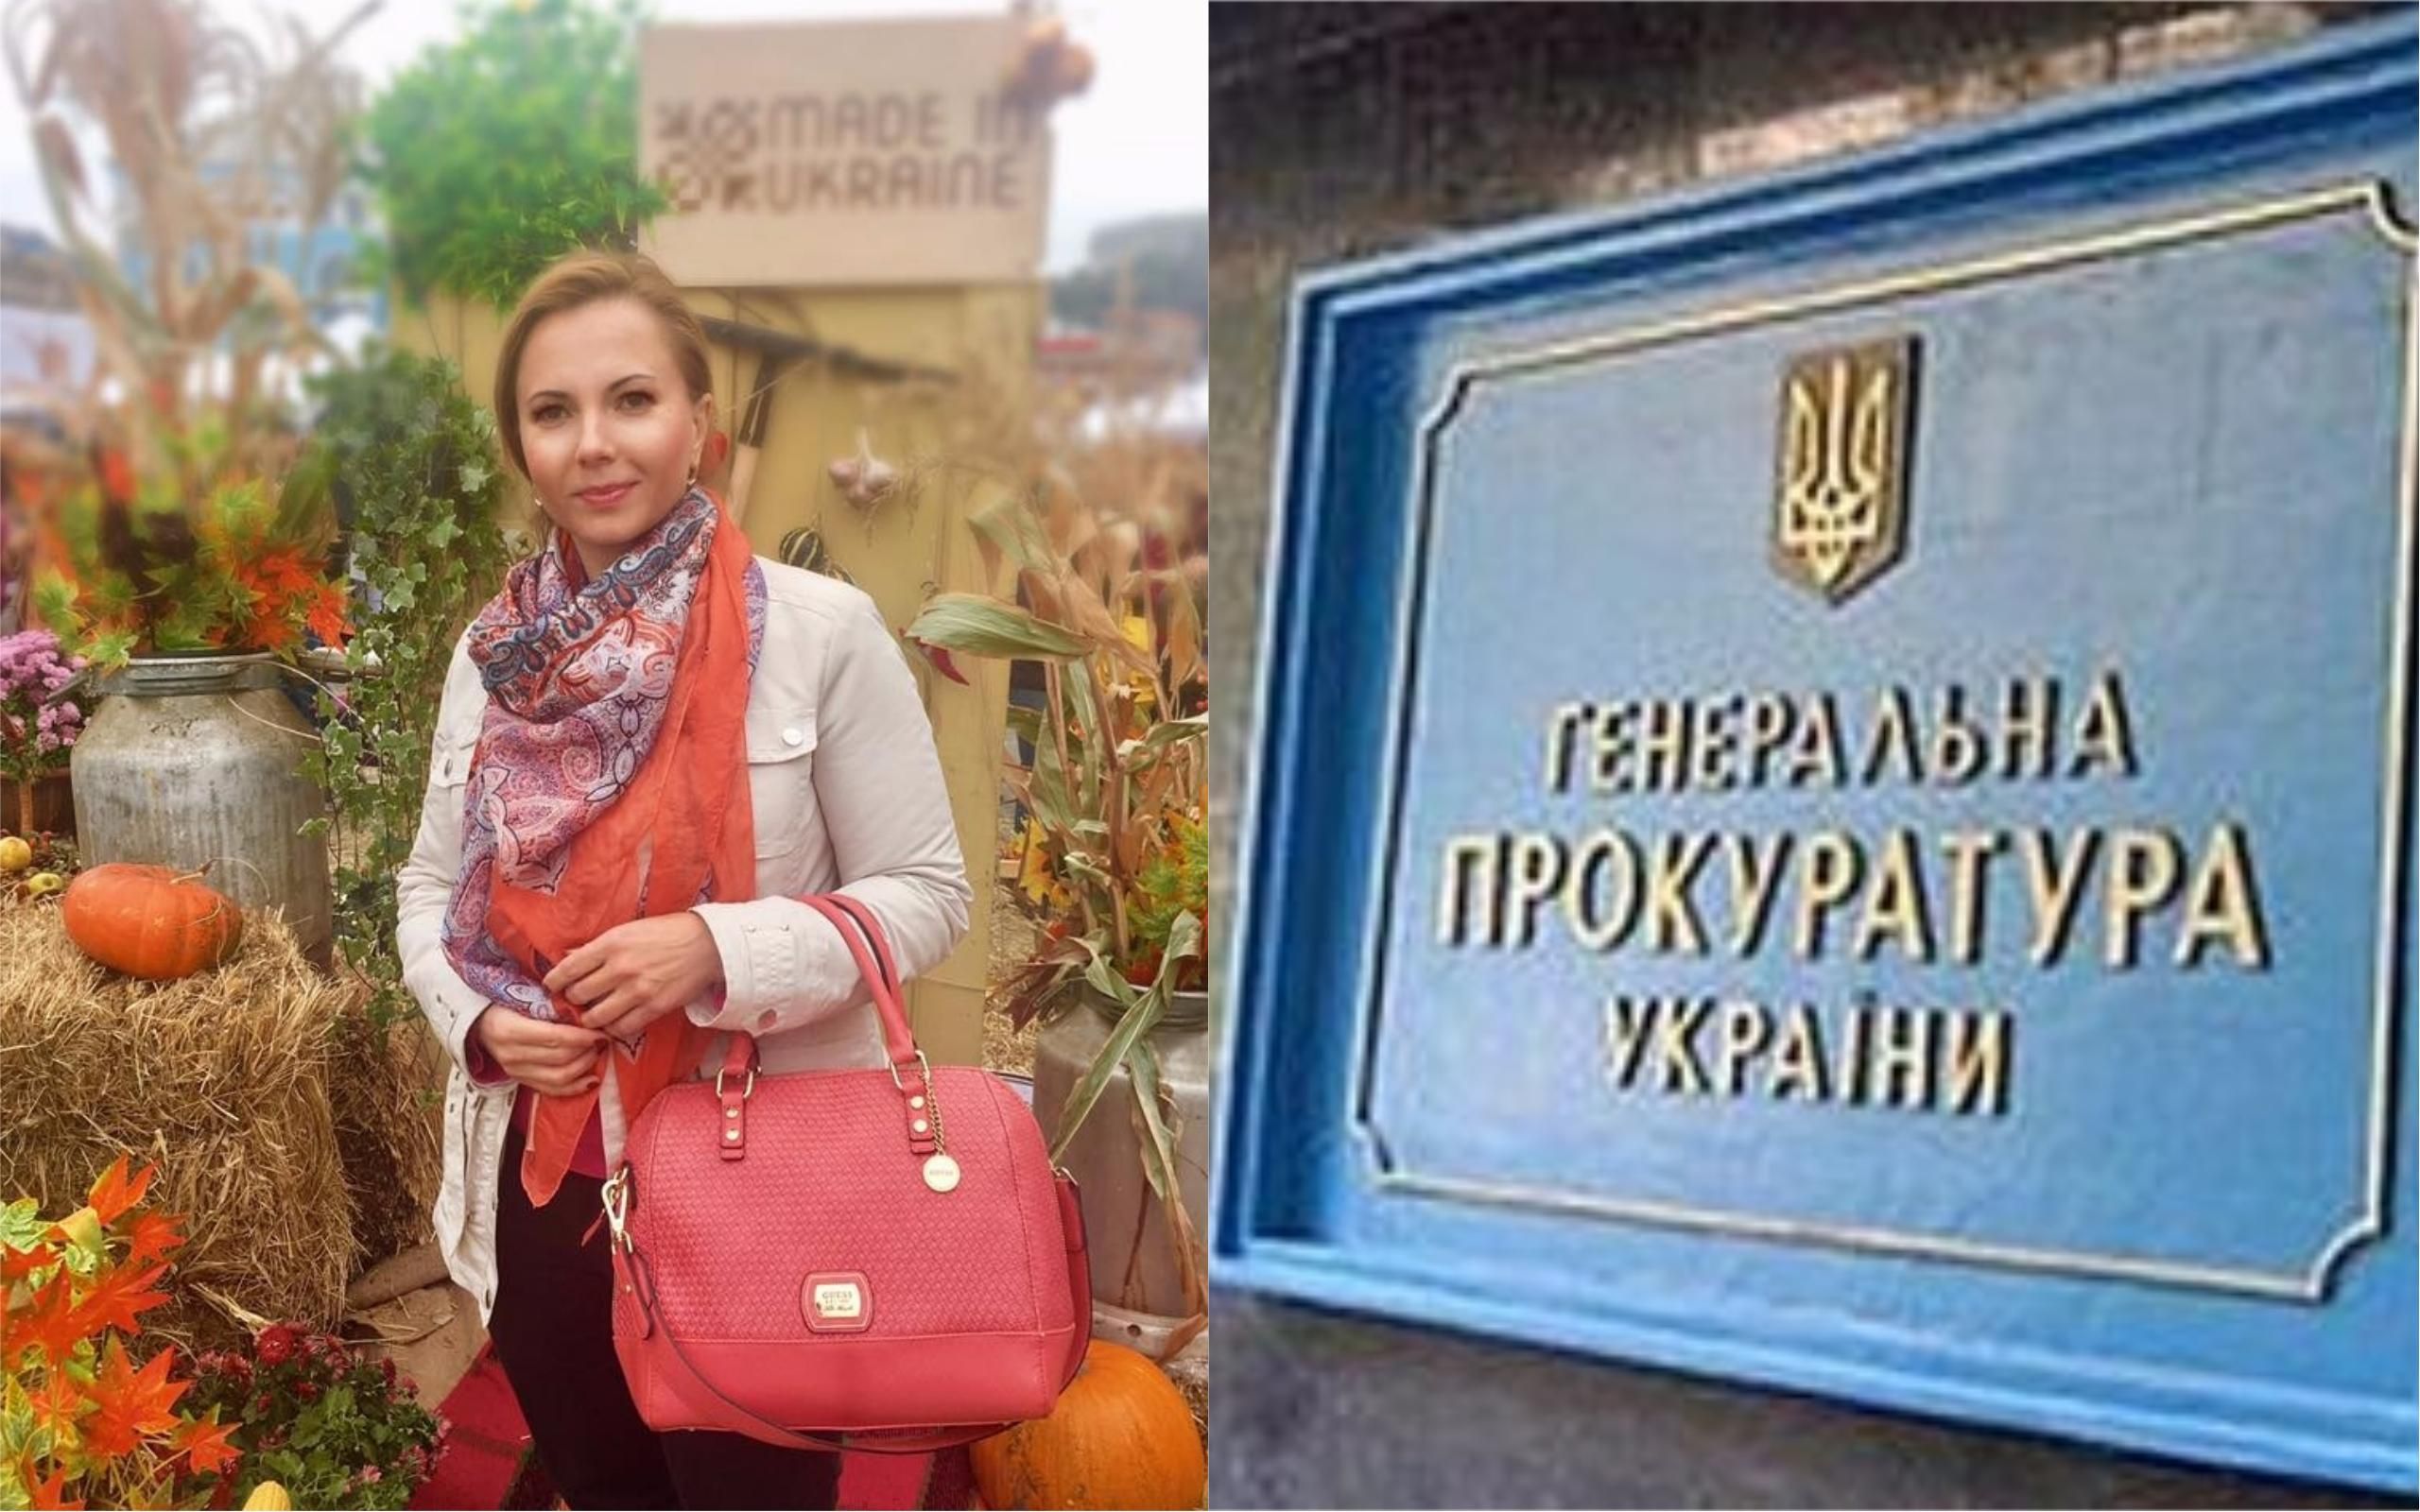 В ГПУ объяснили, с чем в действительности связаны обыски у журналистки "Украинского радио"